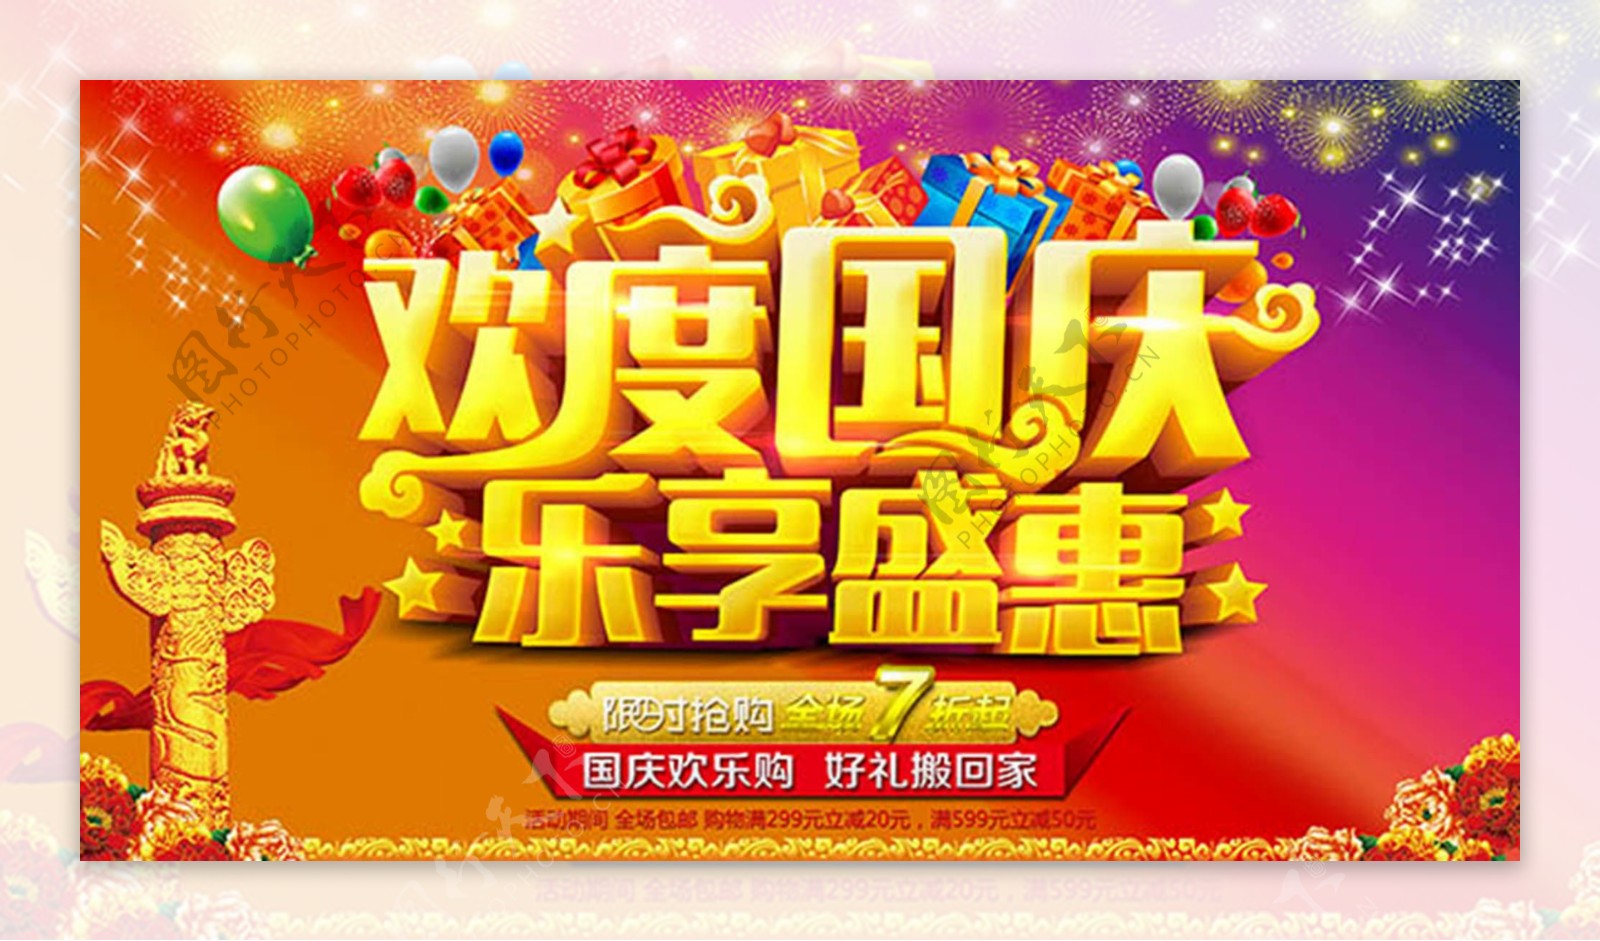 欢度国庆乐享盛惠国庆节促销海报设计